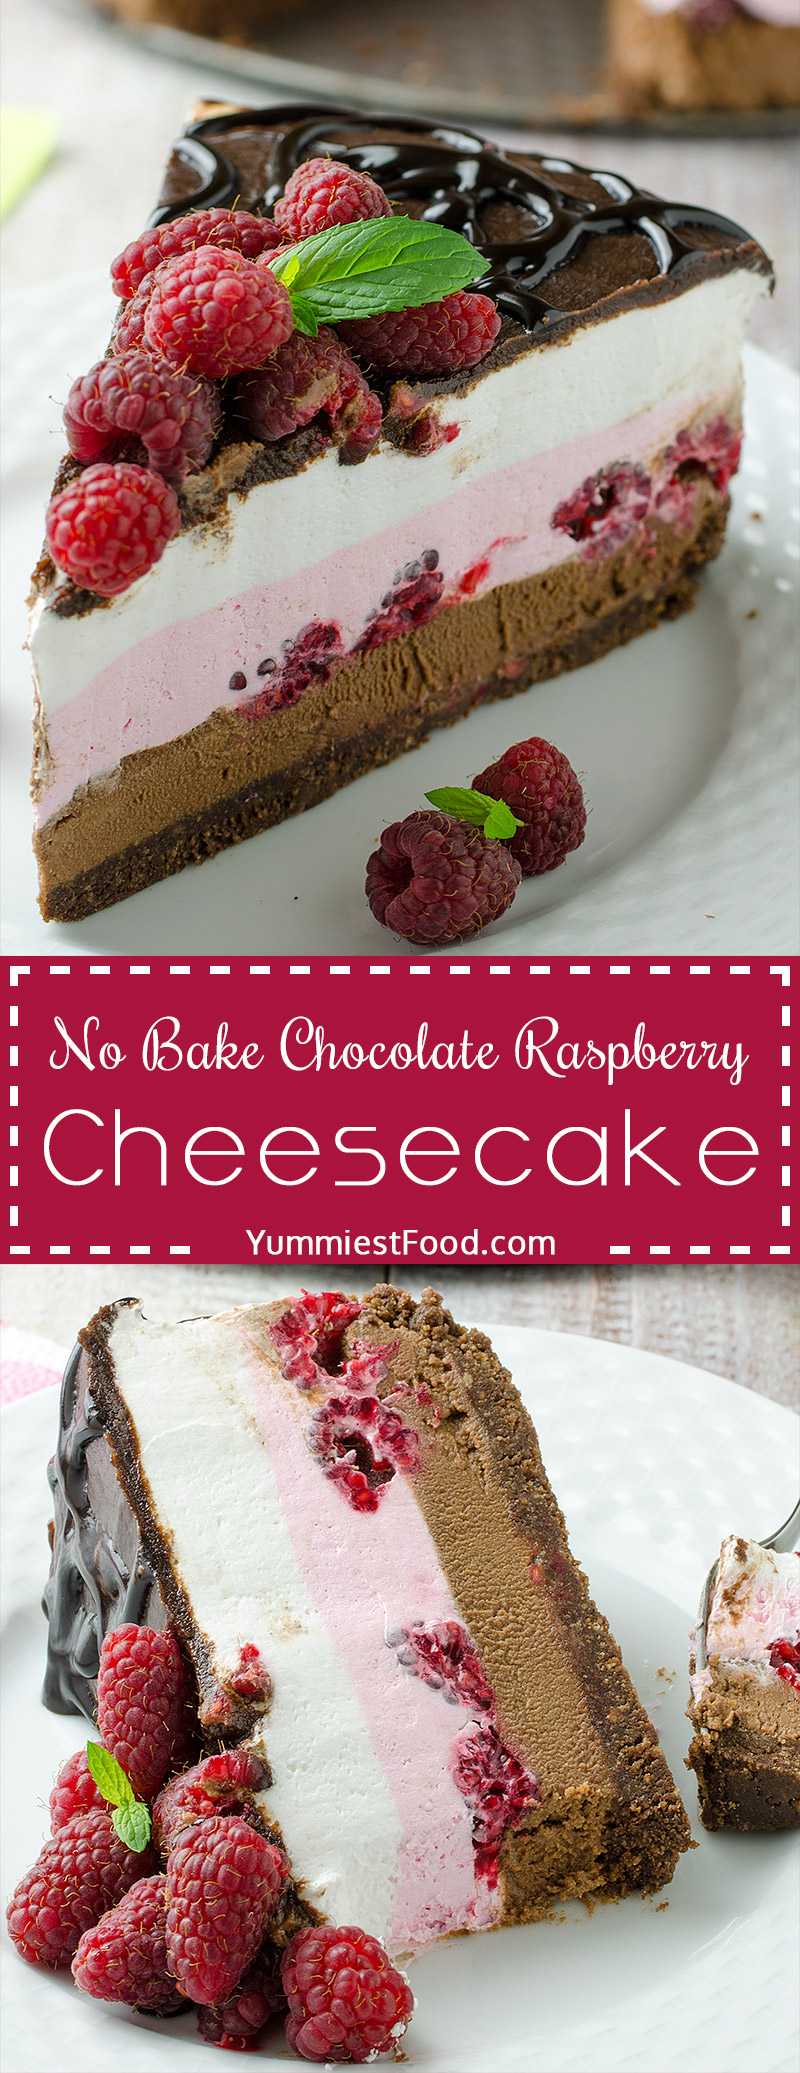 No Bake Chocolate Raspberry Cheesecake – very nice combination of raspberries, chocolate and cheese